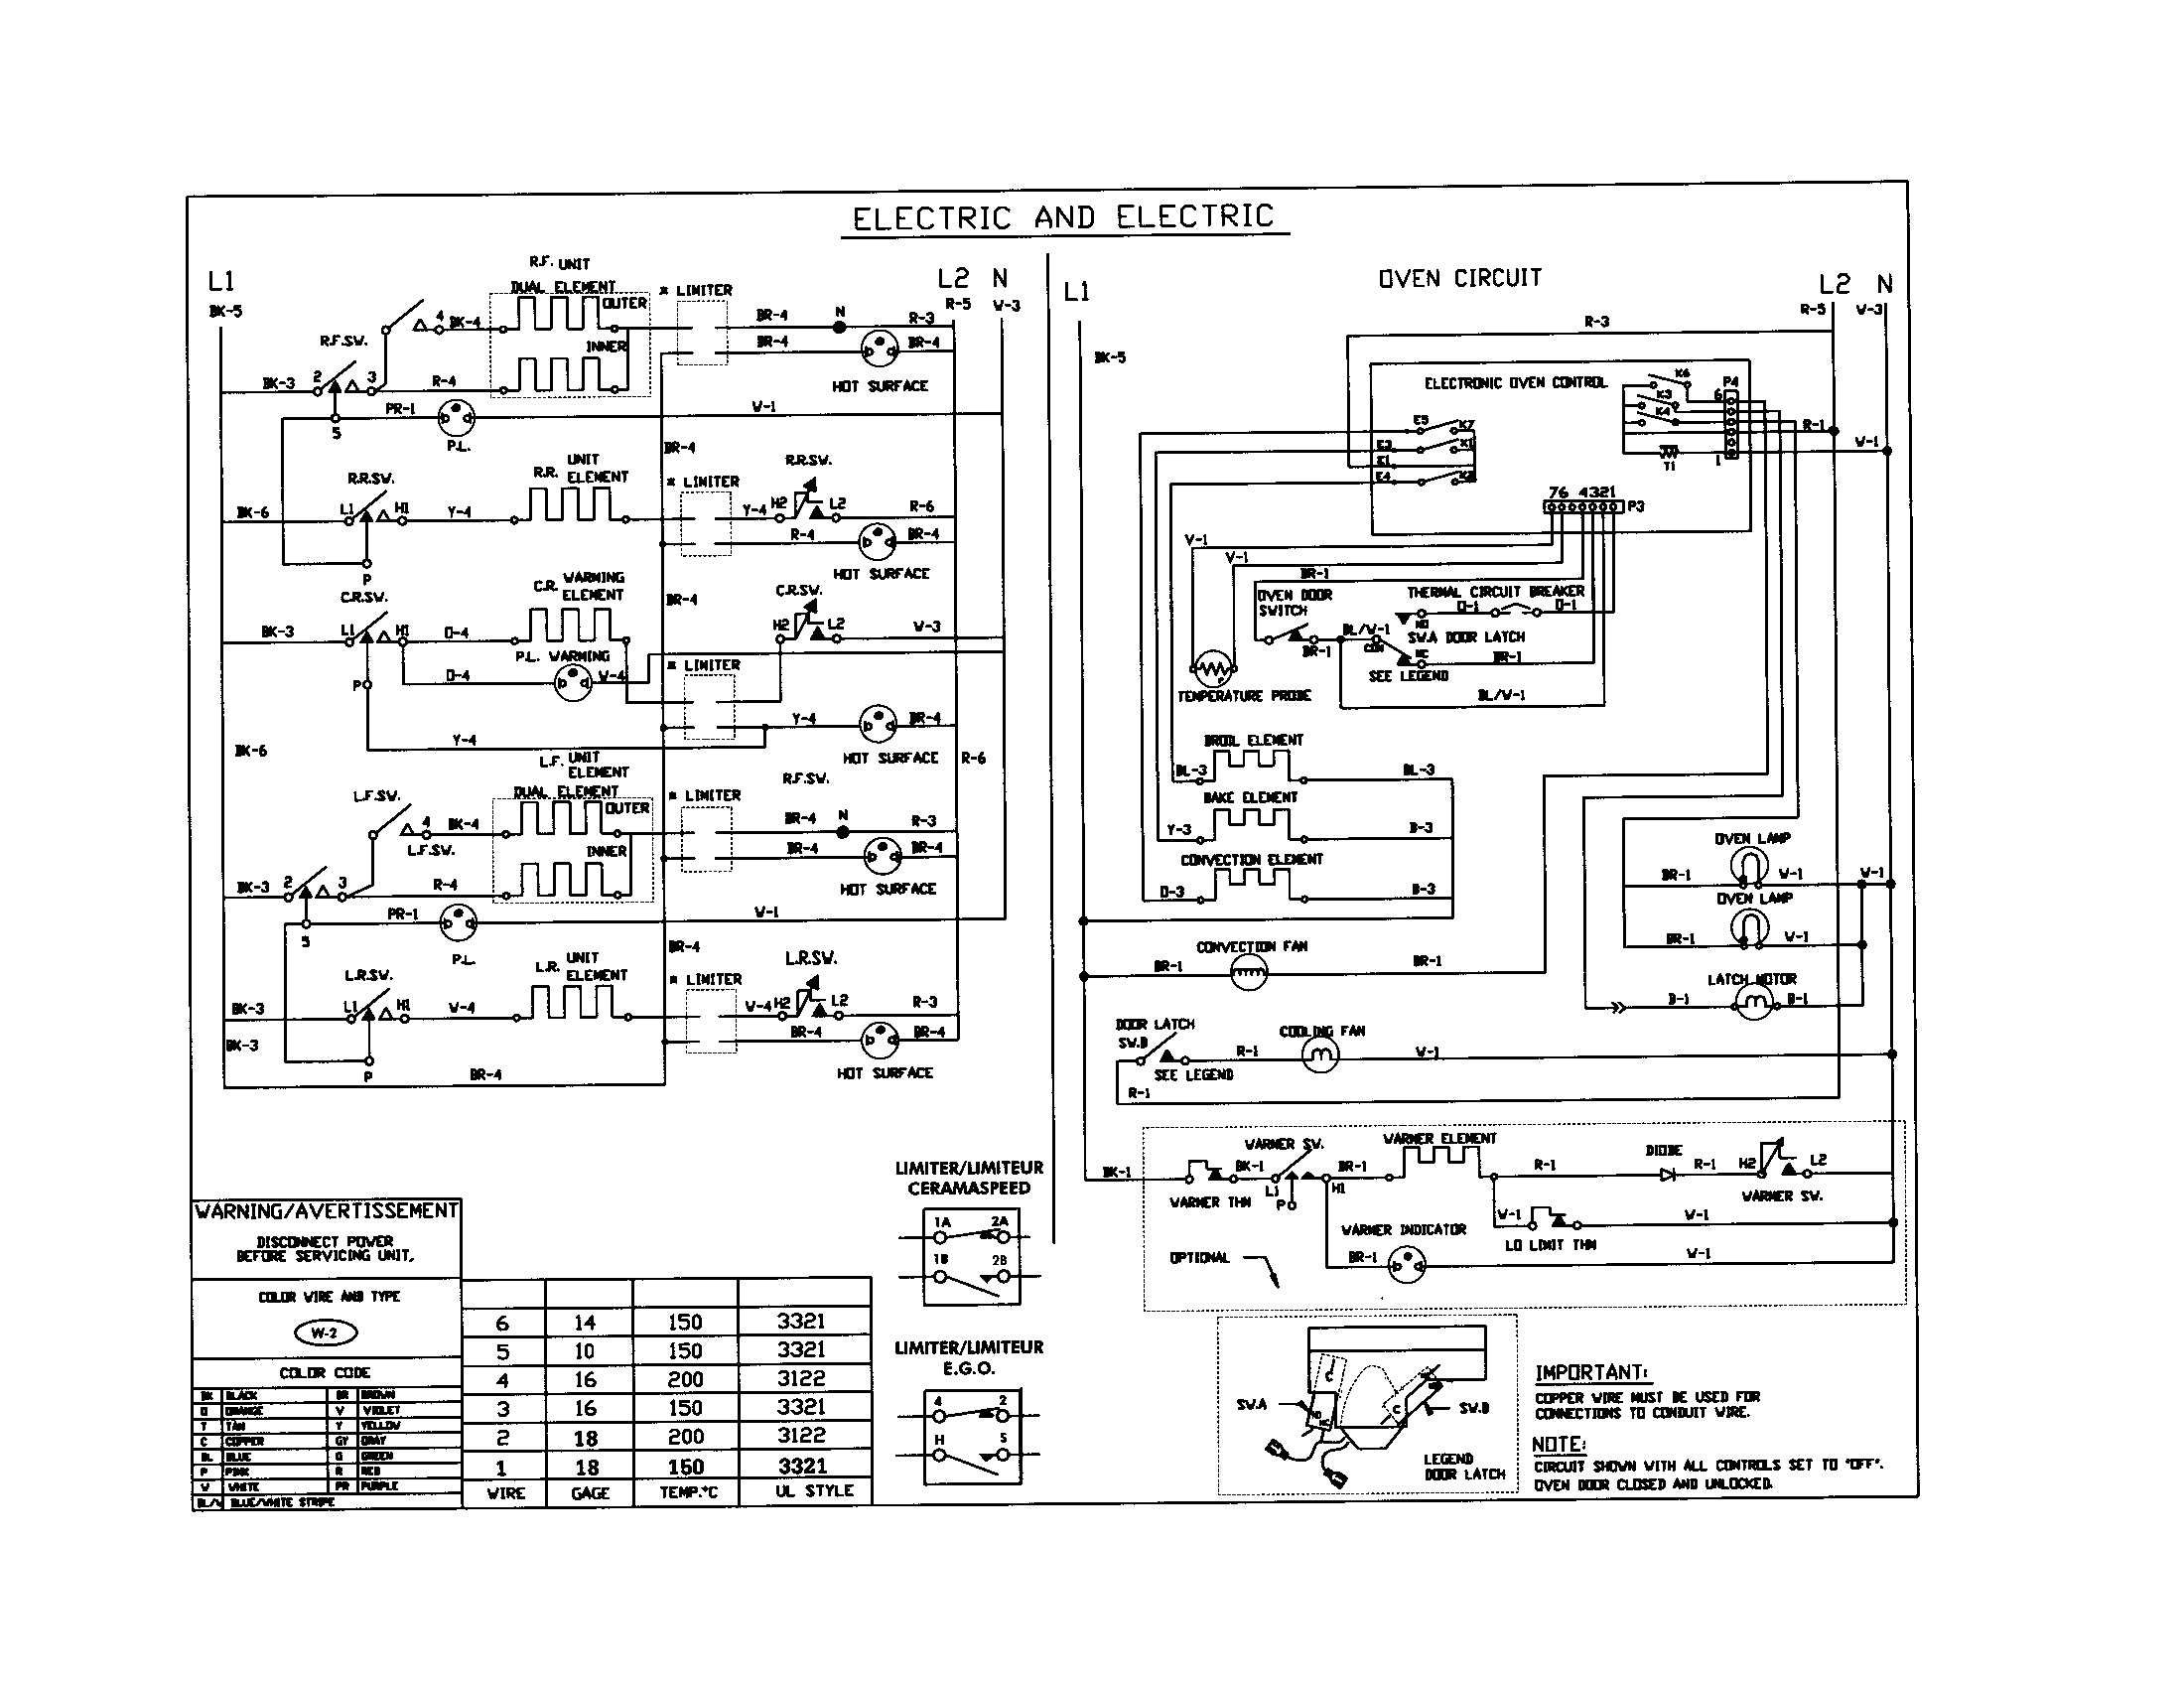 Model #79641003610 Kenmore Elite Washer Wiring Diagram [diagram] Kenmore 790 Electric Range Wiring Diagram Full Version Hd Quality Wiring Diagram Of Model #79641003610 Kenmore Elite Washer Wiring Diagram